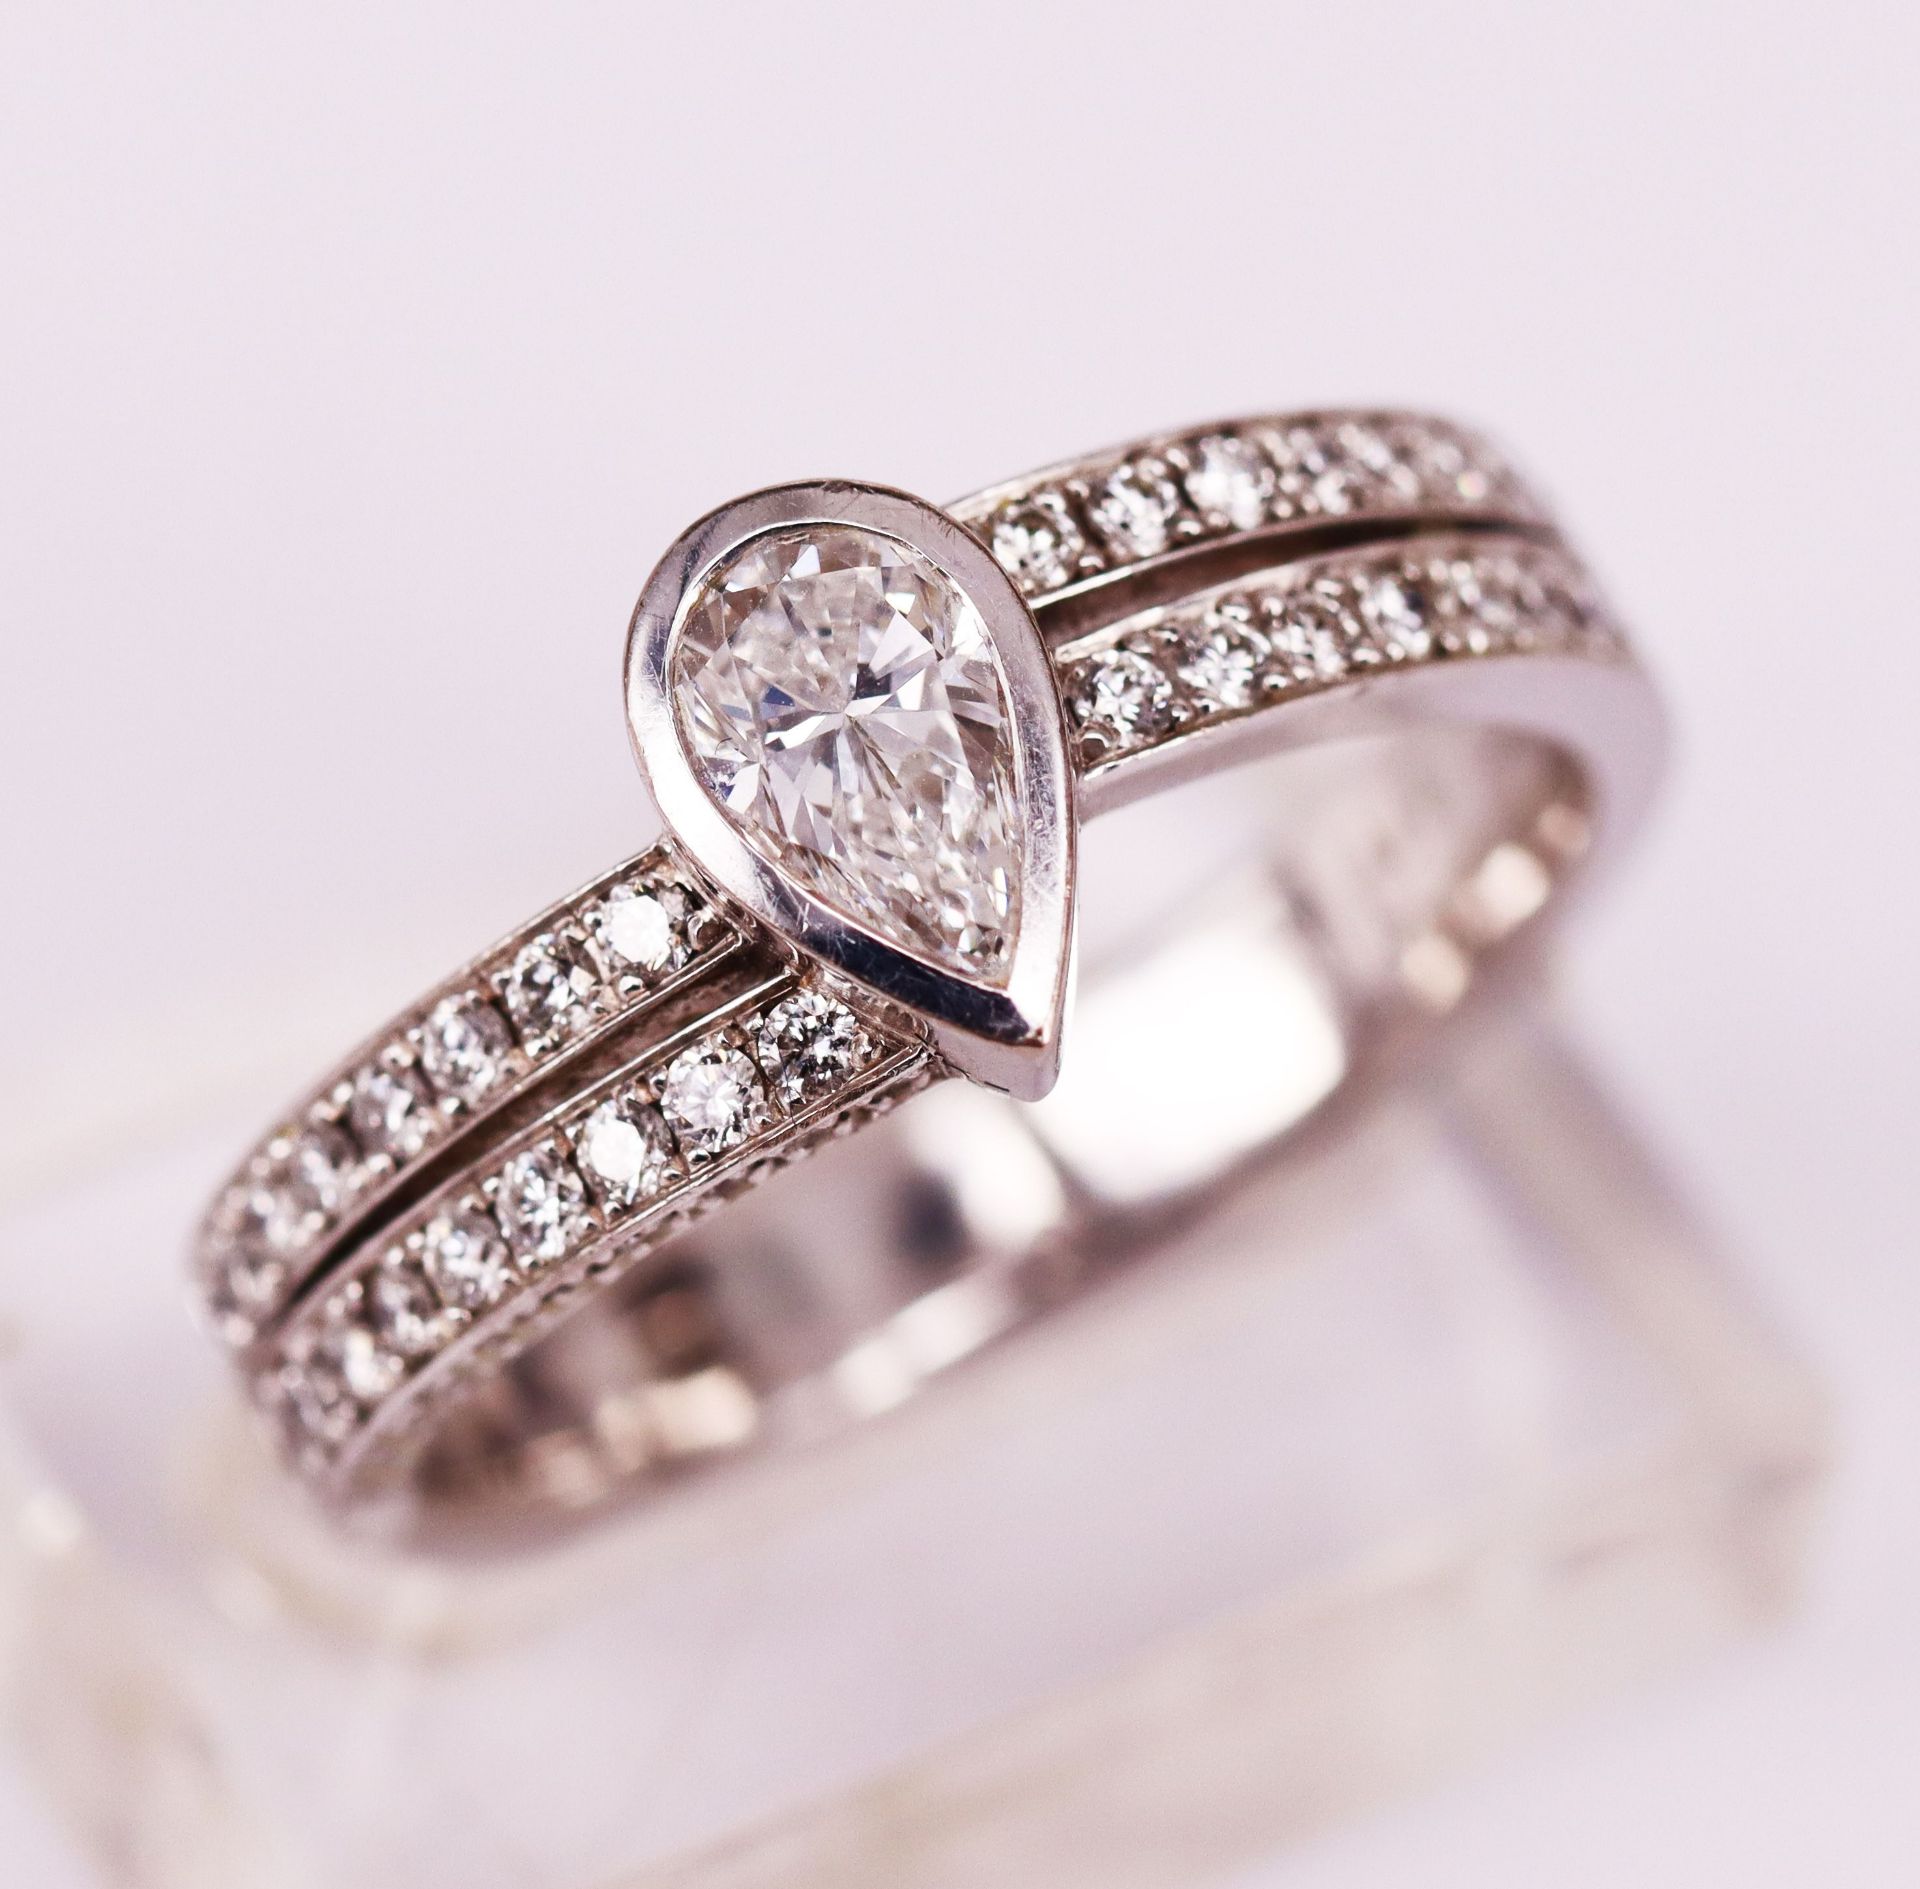 Diamanttropfen-Ring, 750er WG. Der Diamant in Tropfenform geschliffen, laut HRD (Hoge raad voor